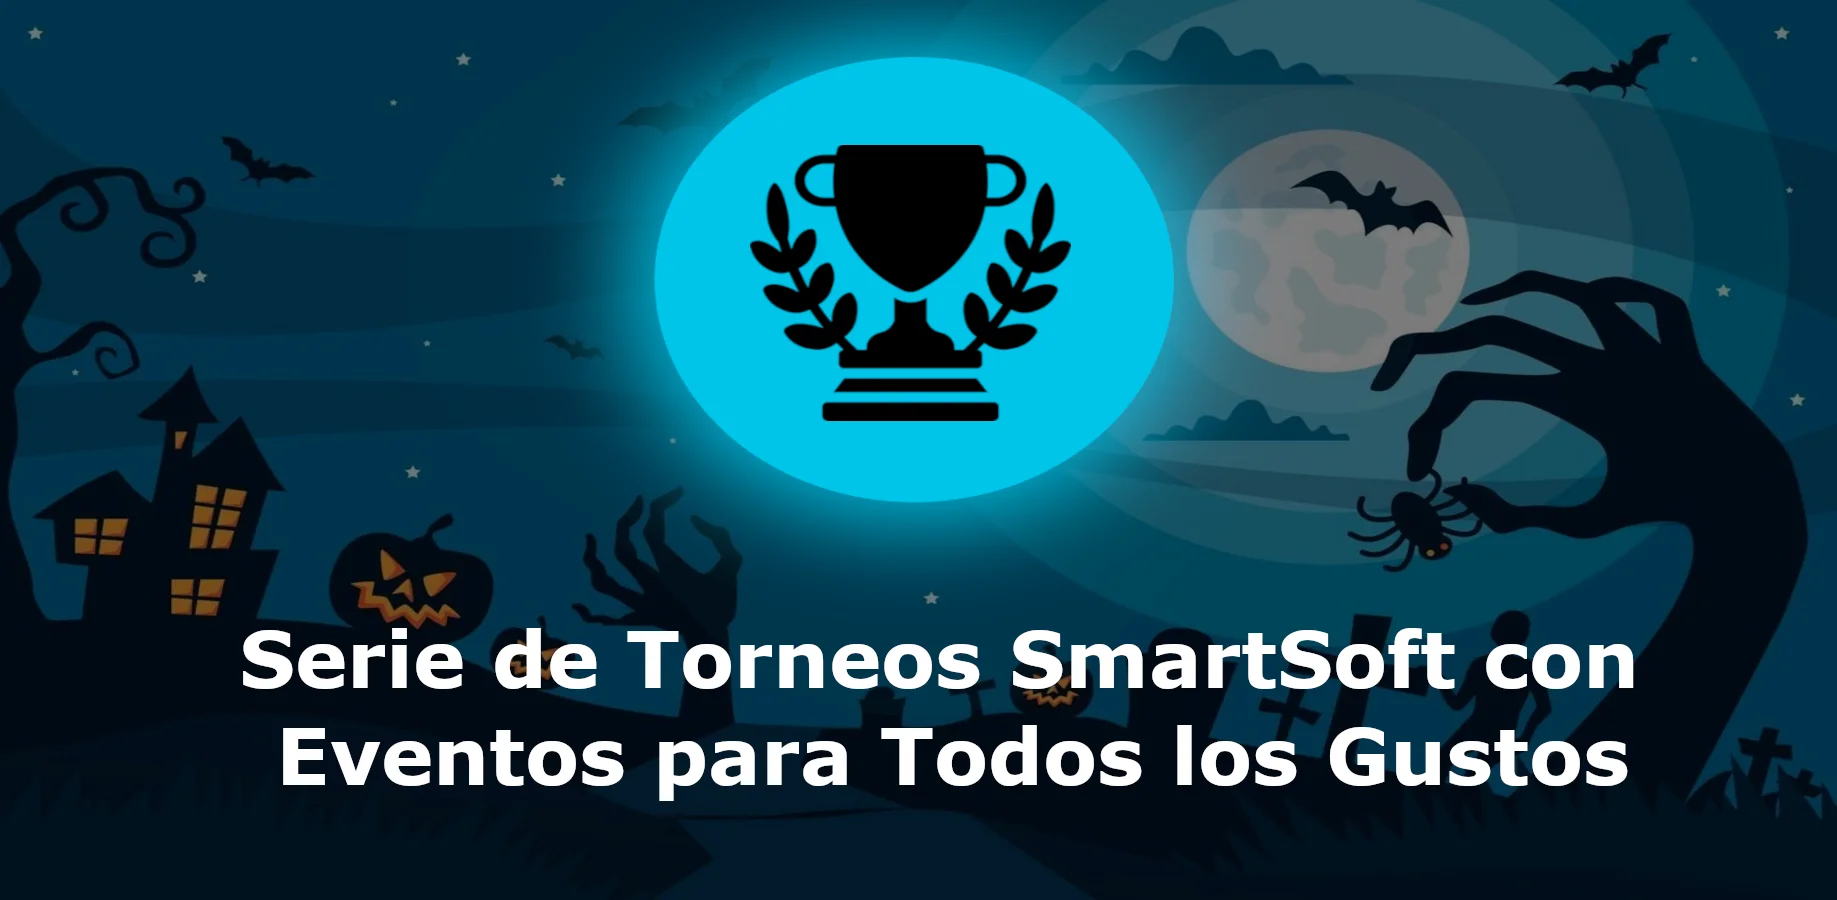 Serie de Torneos SmartSoft con Eventos para Todos los Gustos